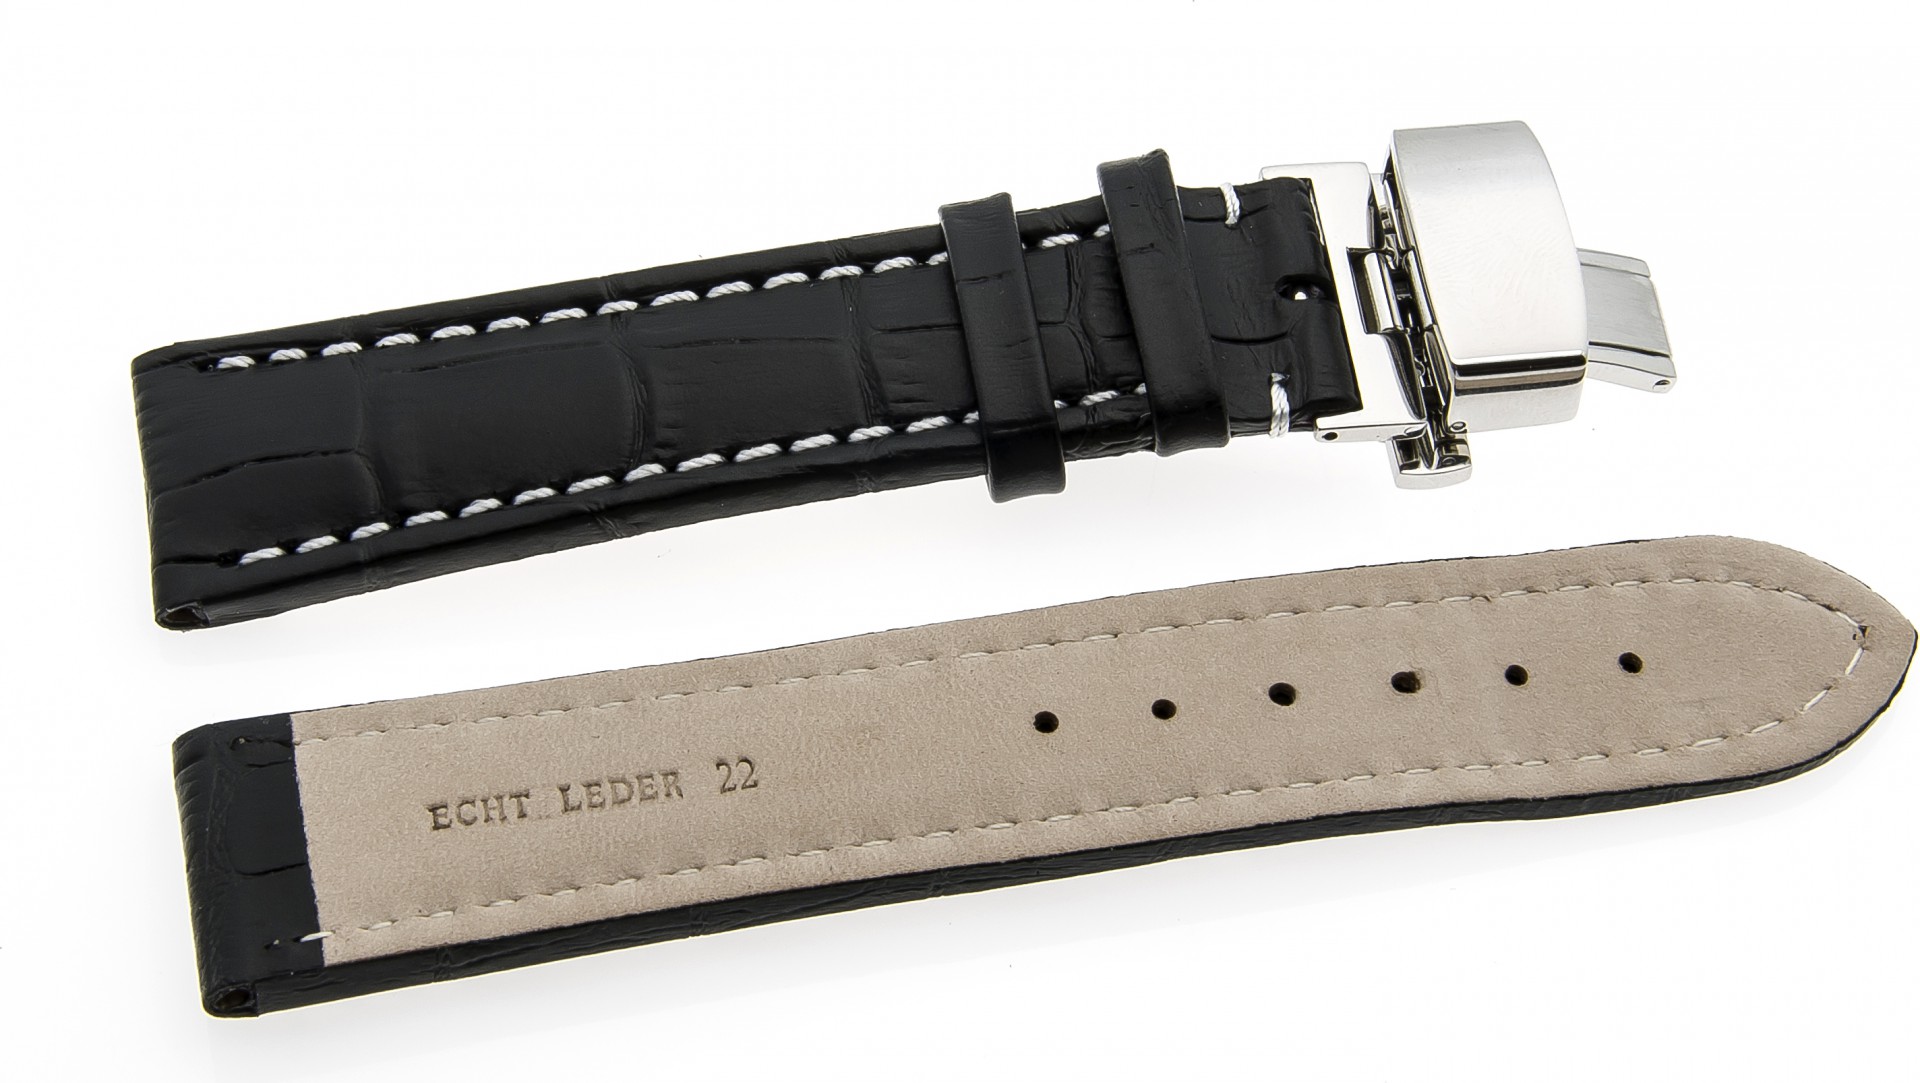   Uhrenarmband Kroko look Butterfly-Schließe - Leder, geprägt - schwarz mit weißer Naht 